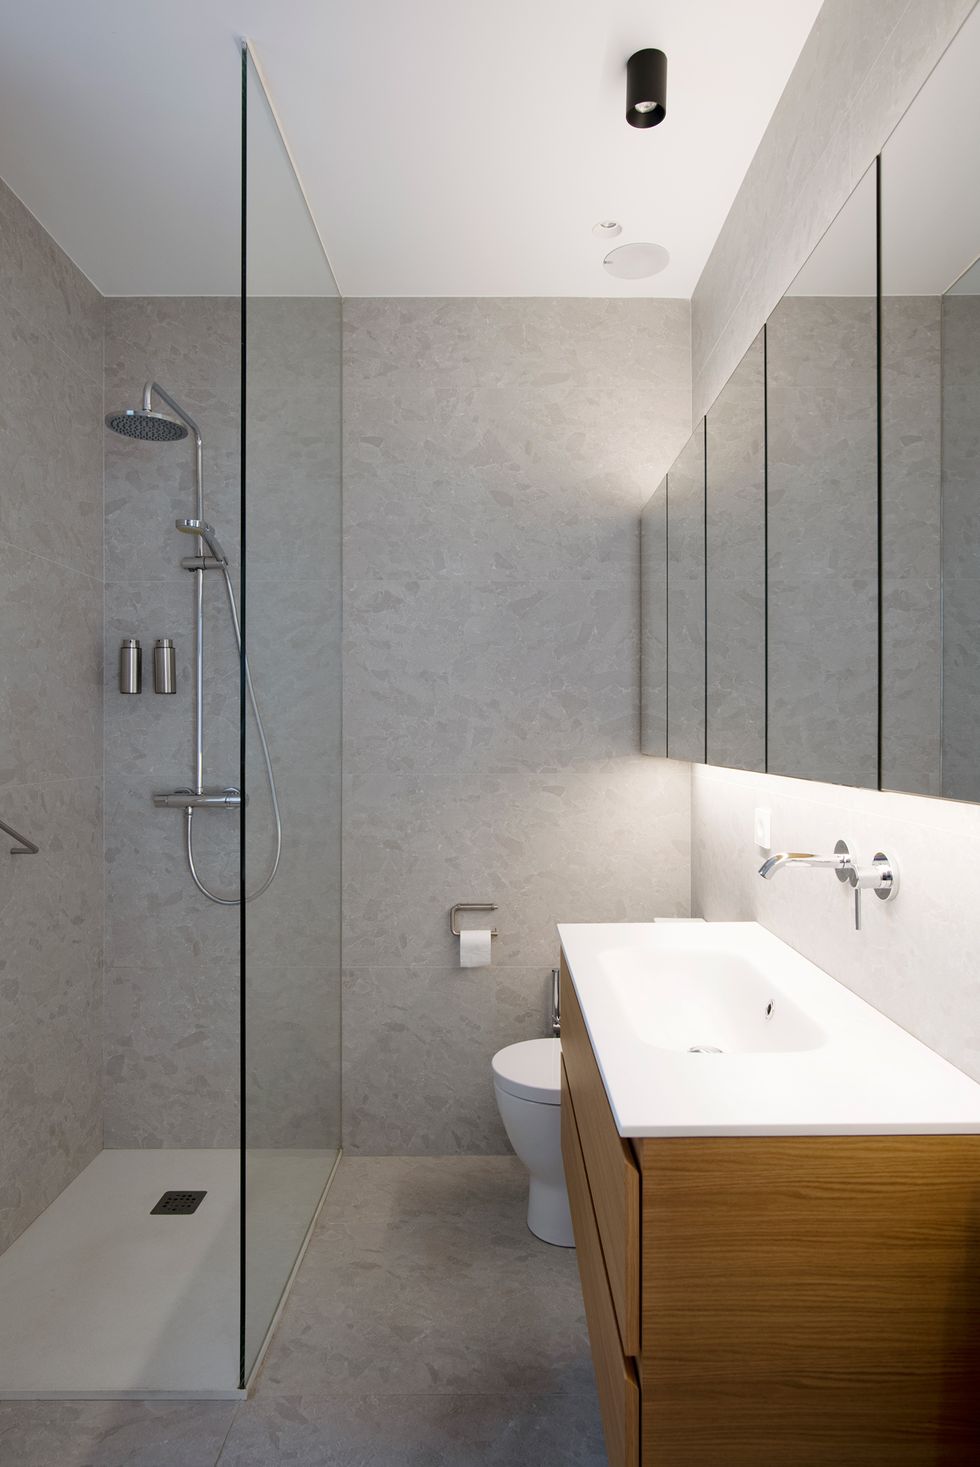 baño con ducha a ras de suelo revestido con microcemento y mueble de lavabo de madera suspendido